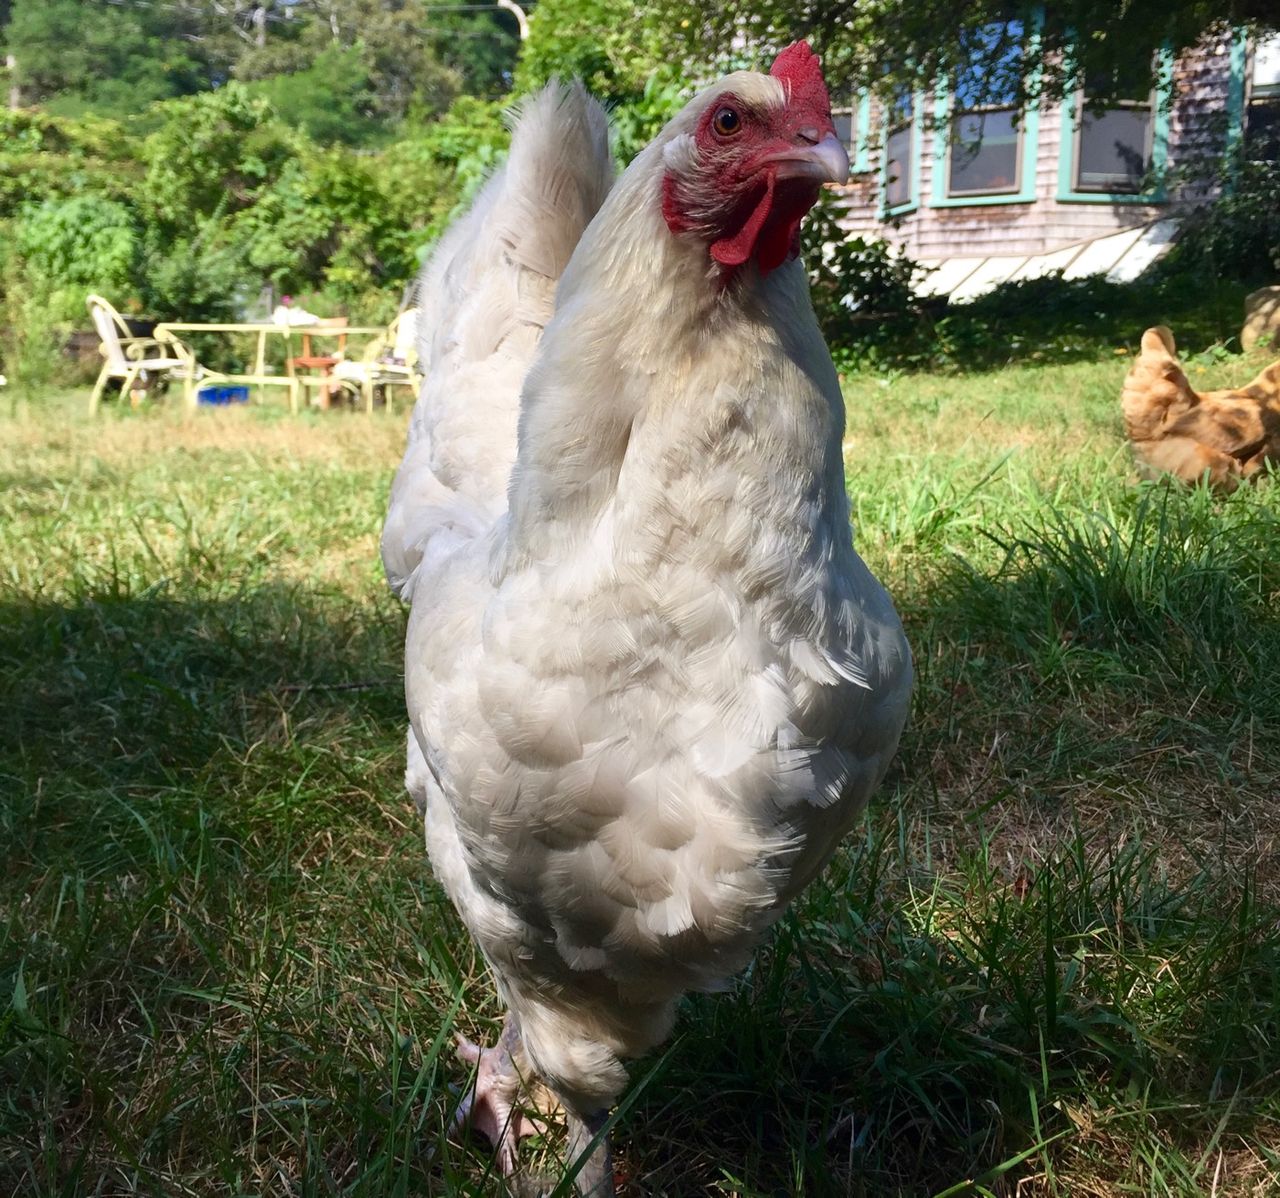 Chicken glaring into camera.